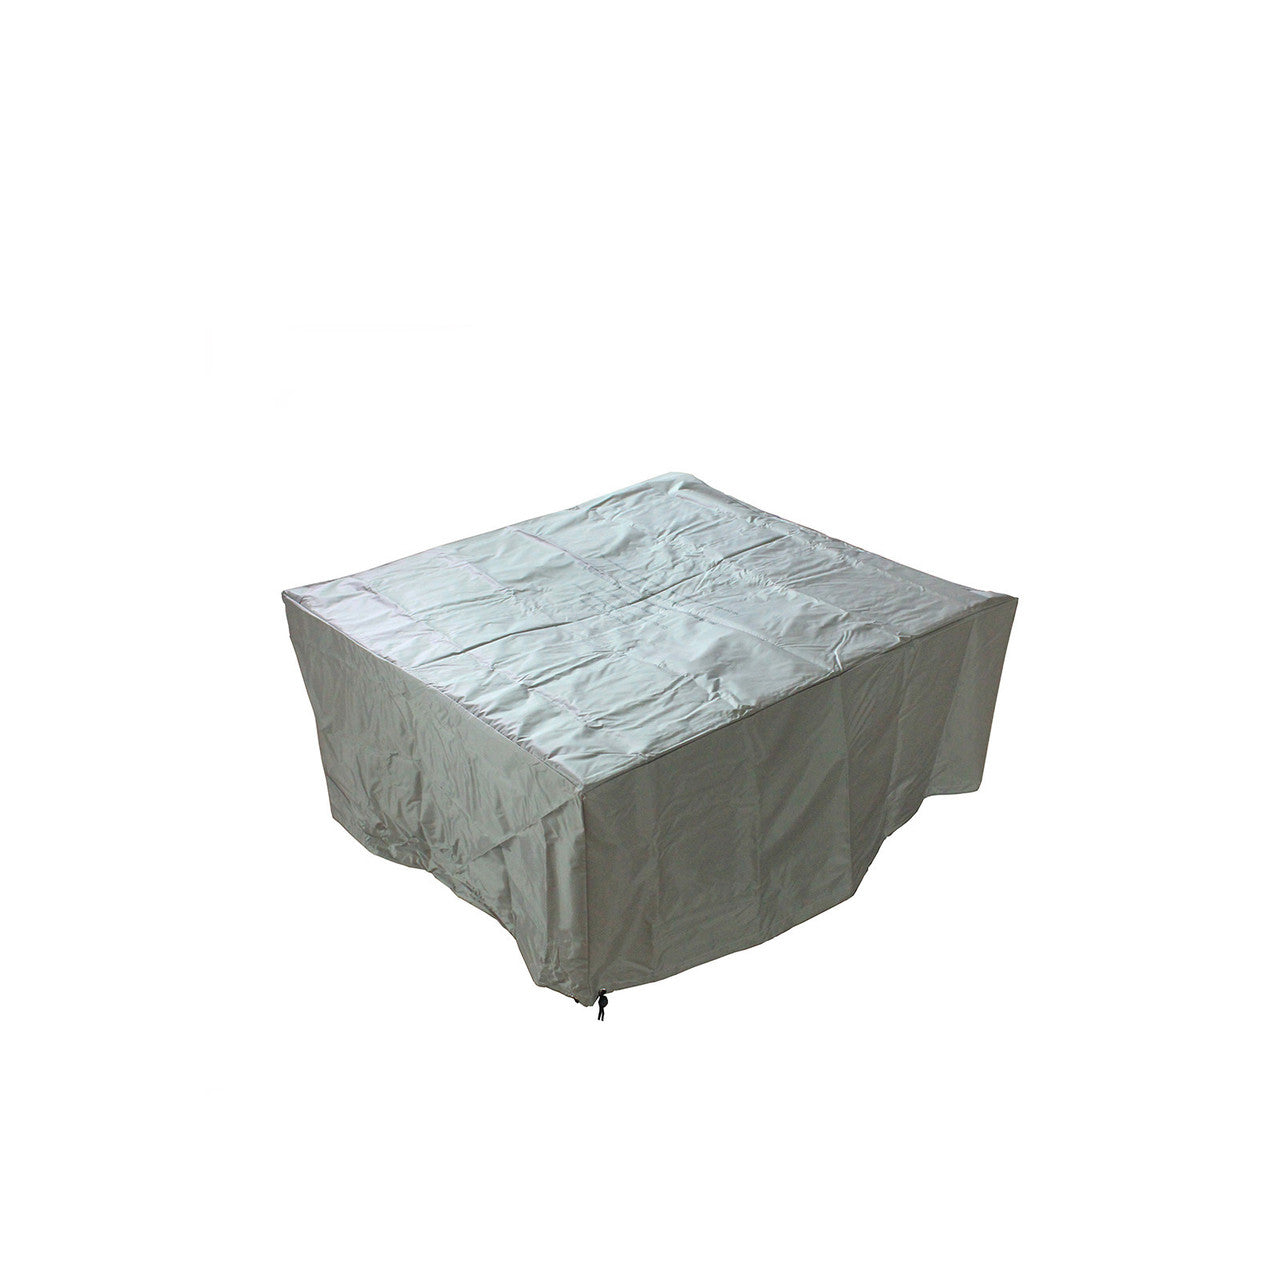 Source Furniture Elements Square Concrete Fire Pit - Dark Gray